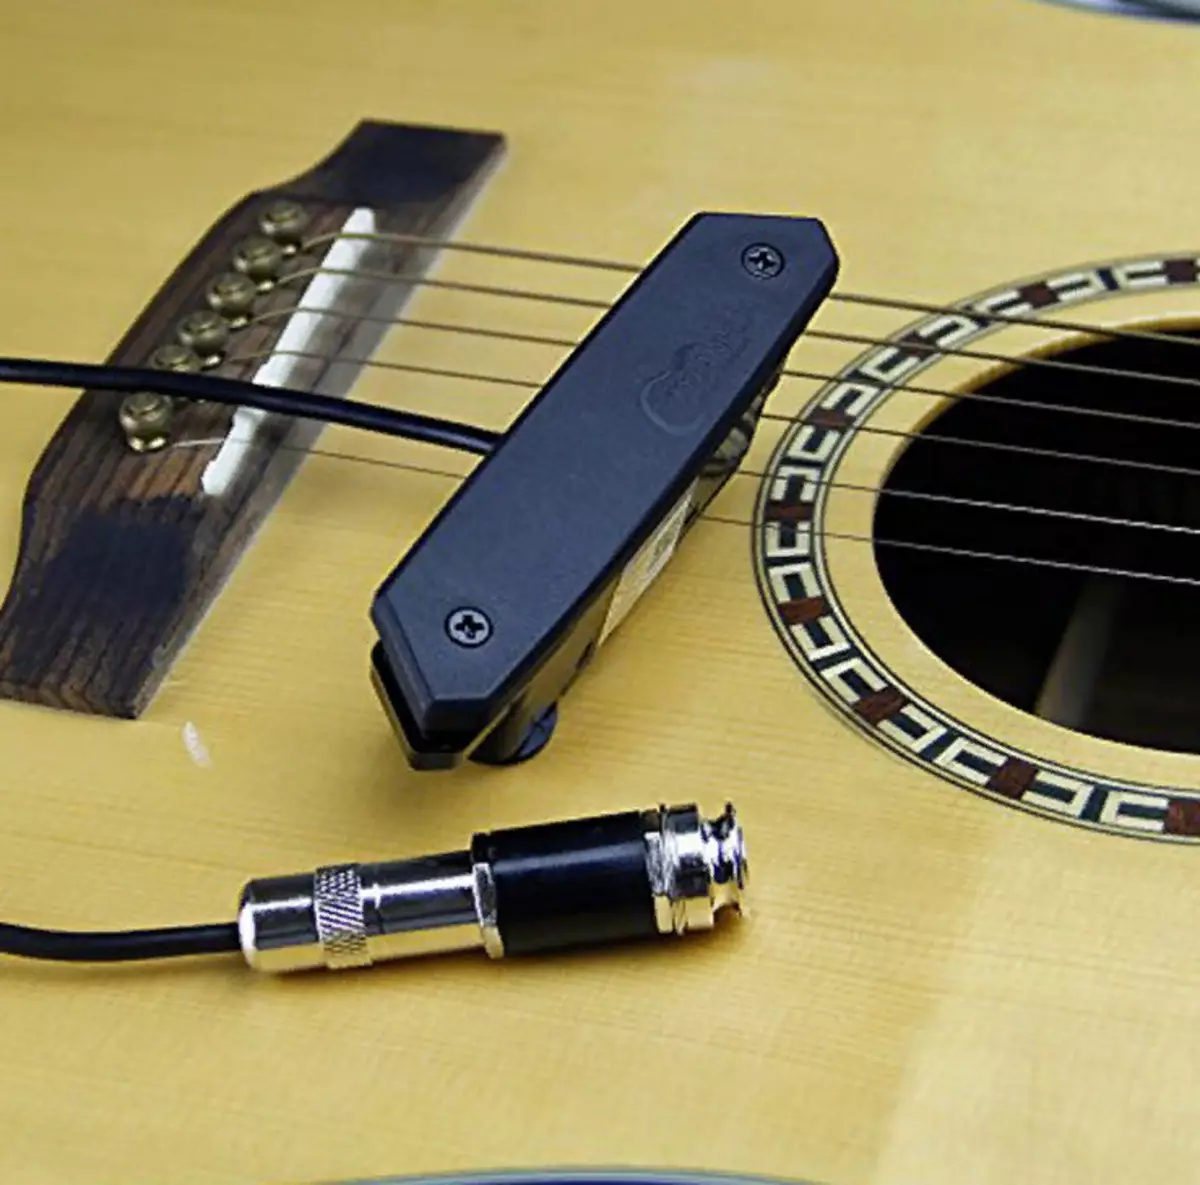 Pickups akustike kitarë: Instalimi, magnetik dhe piezosimer me mikrofon. Çfarë më të mirë për të instaluar? 26265_17